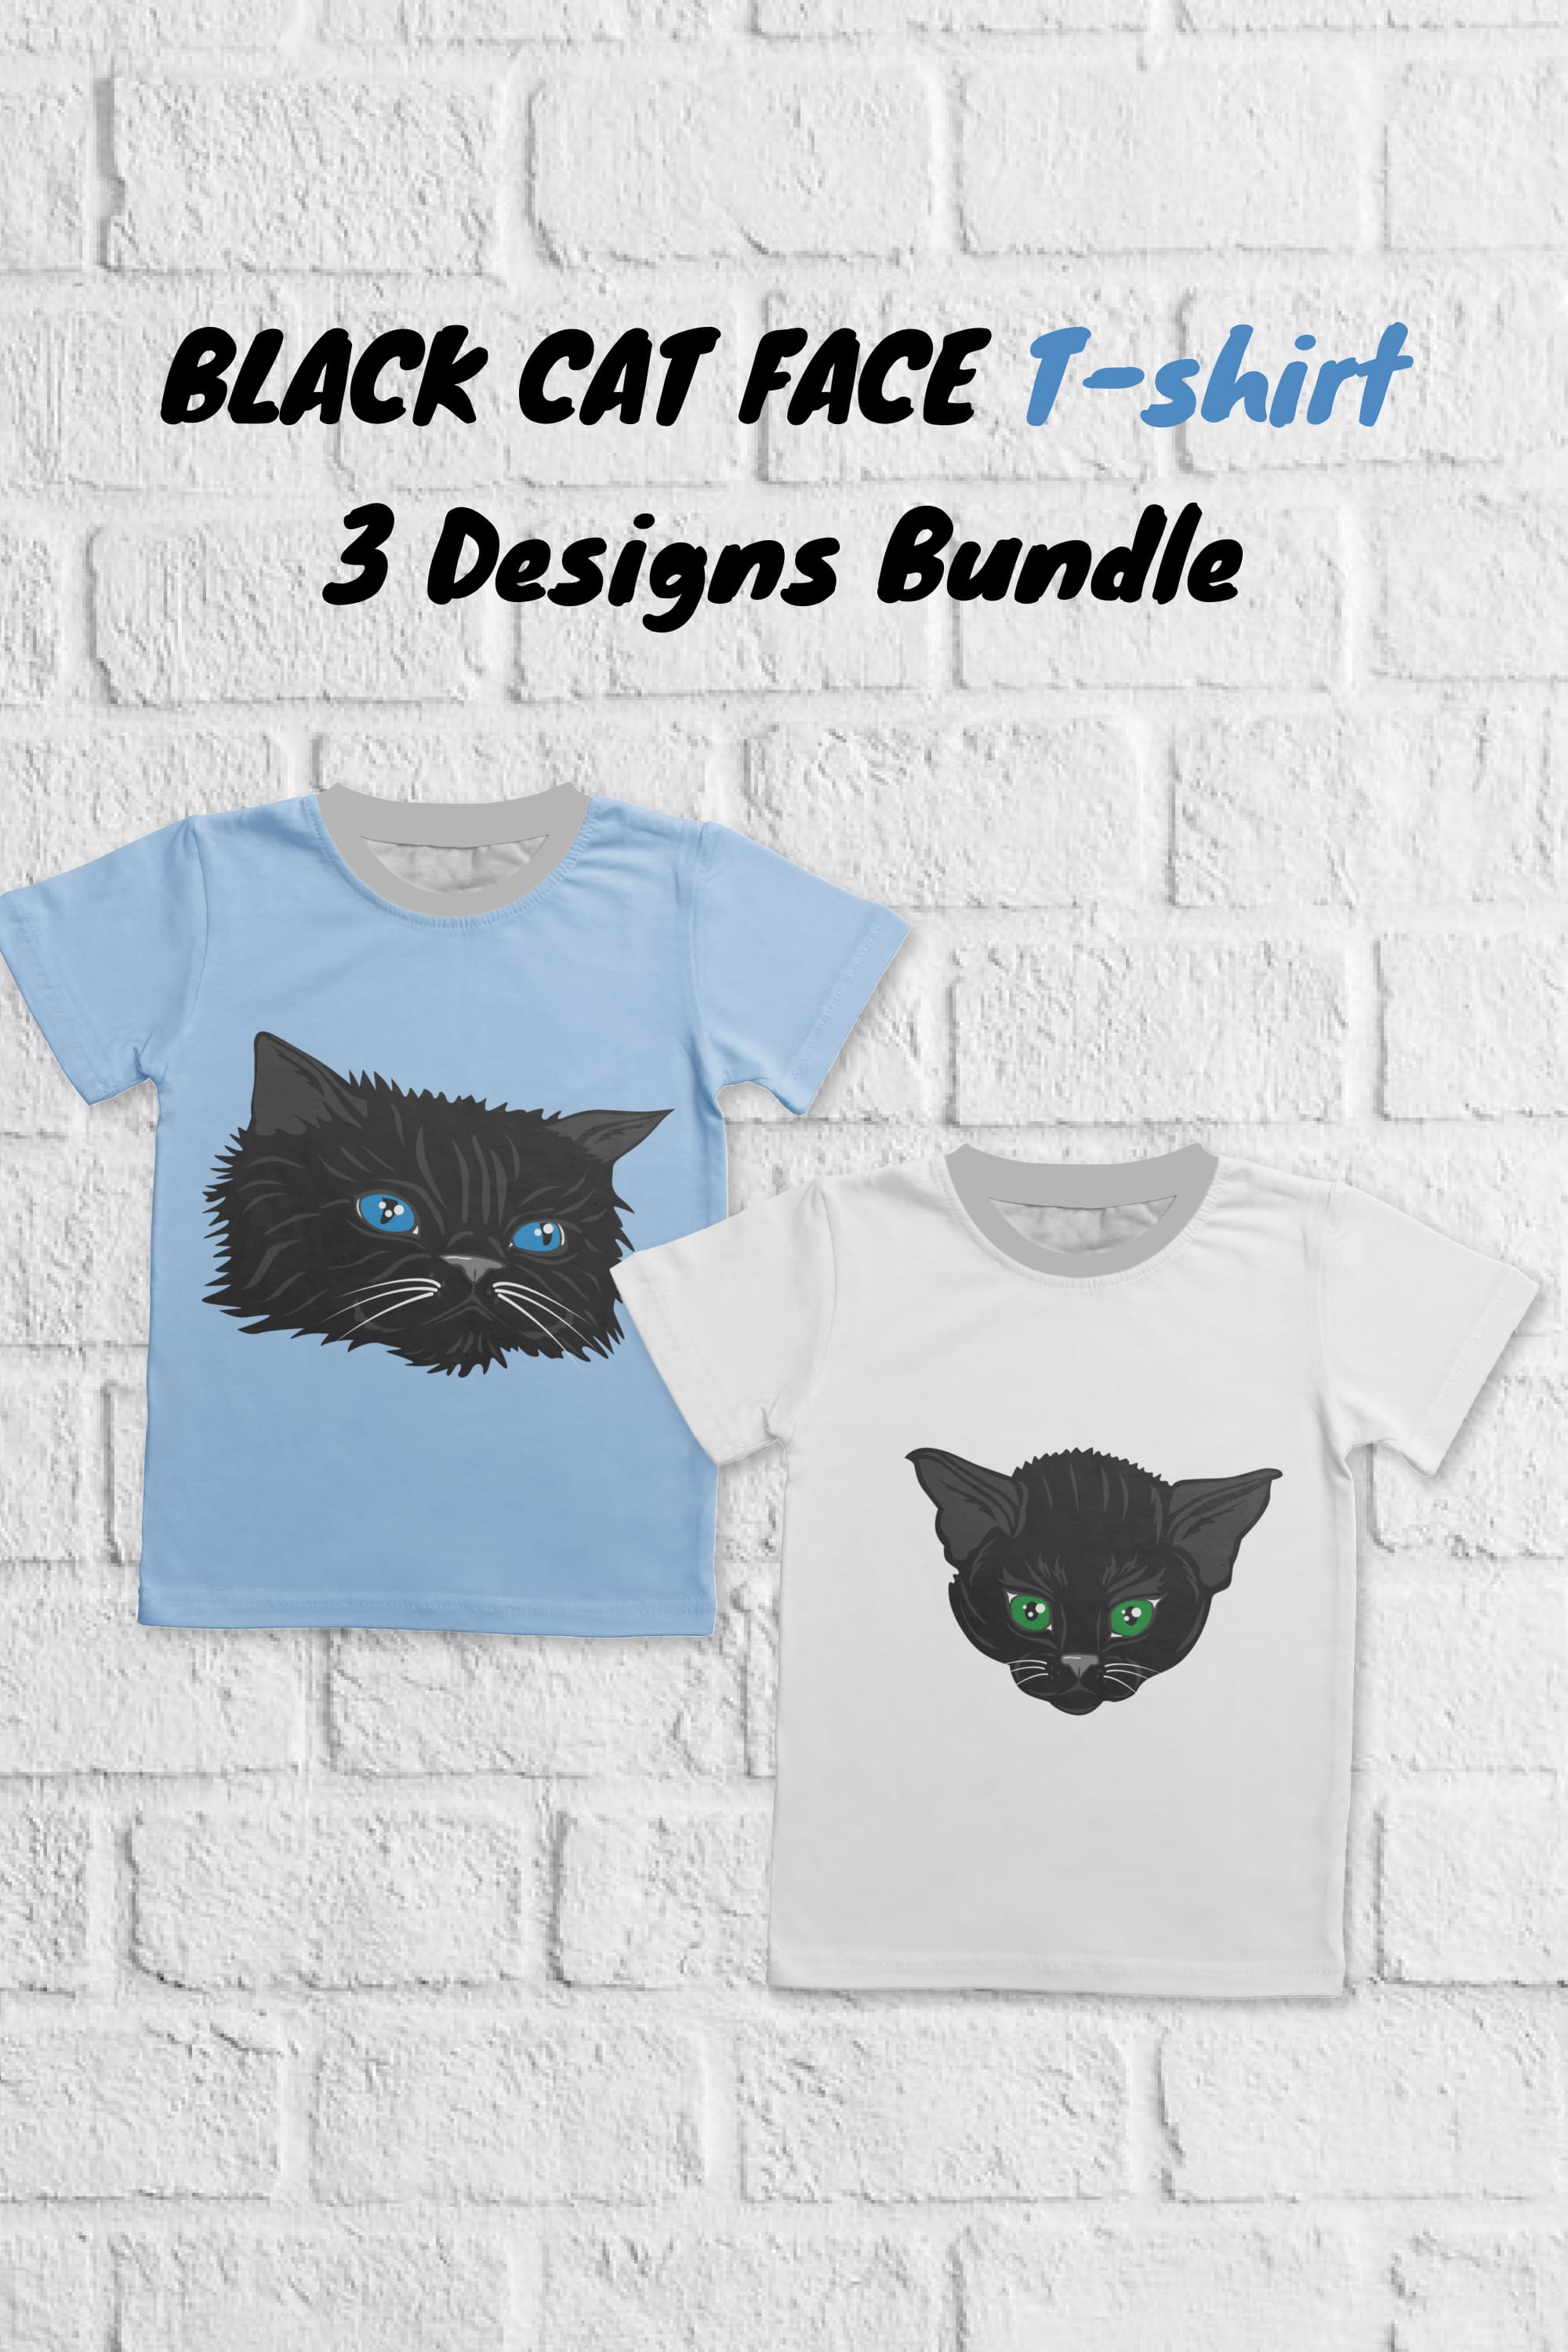 Black Cat Face T-shirt Designs Bundle - Pinterest.